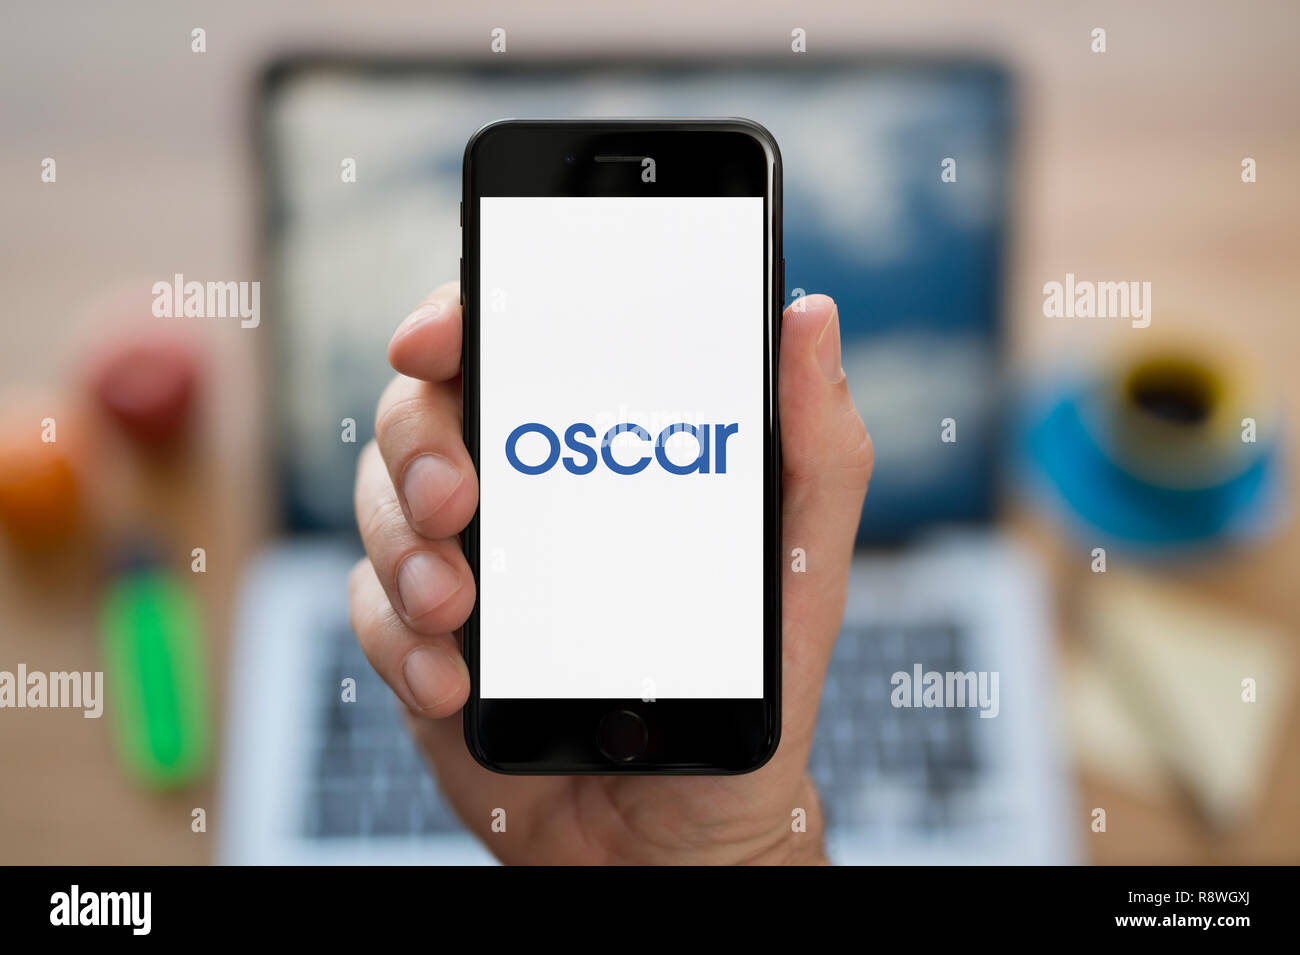 Un uomo guarda al suo iPhone che visualizza il logo di Oscar (solo uso editoriale). Foto Stock